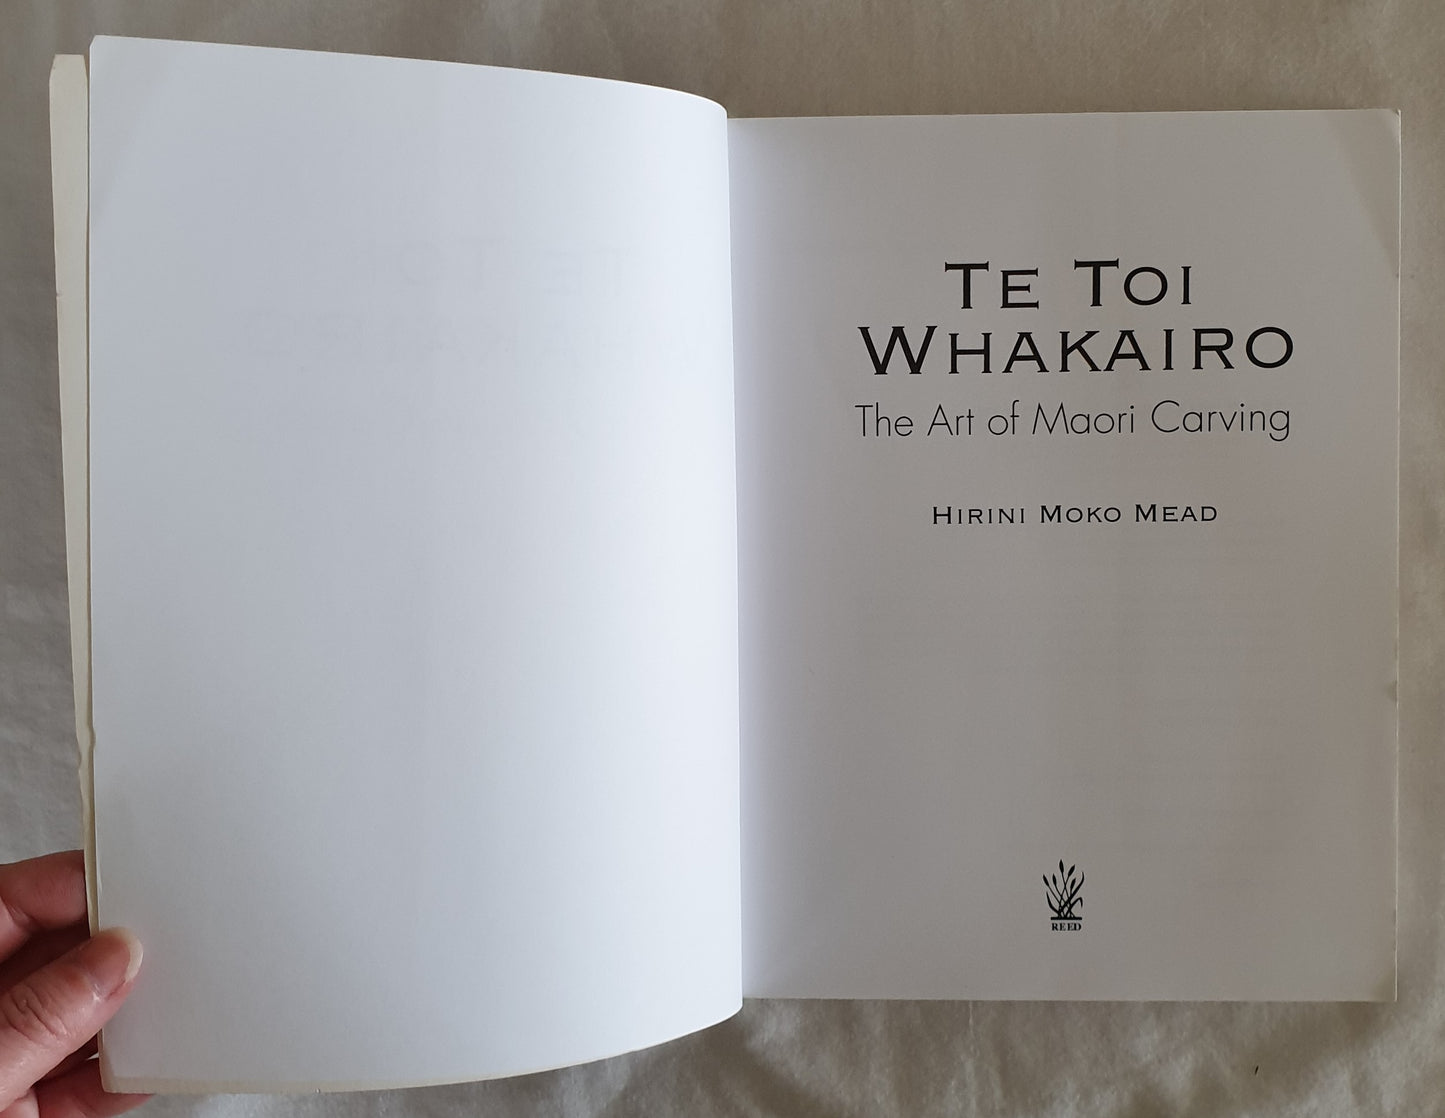 Te Toi Whakairo: The Art of Maori Carving by Hirini Moko Mead